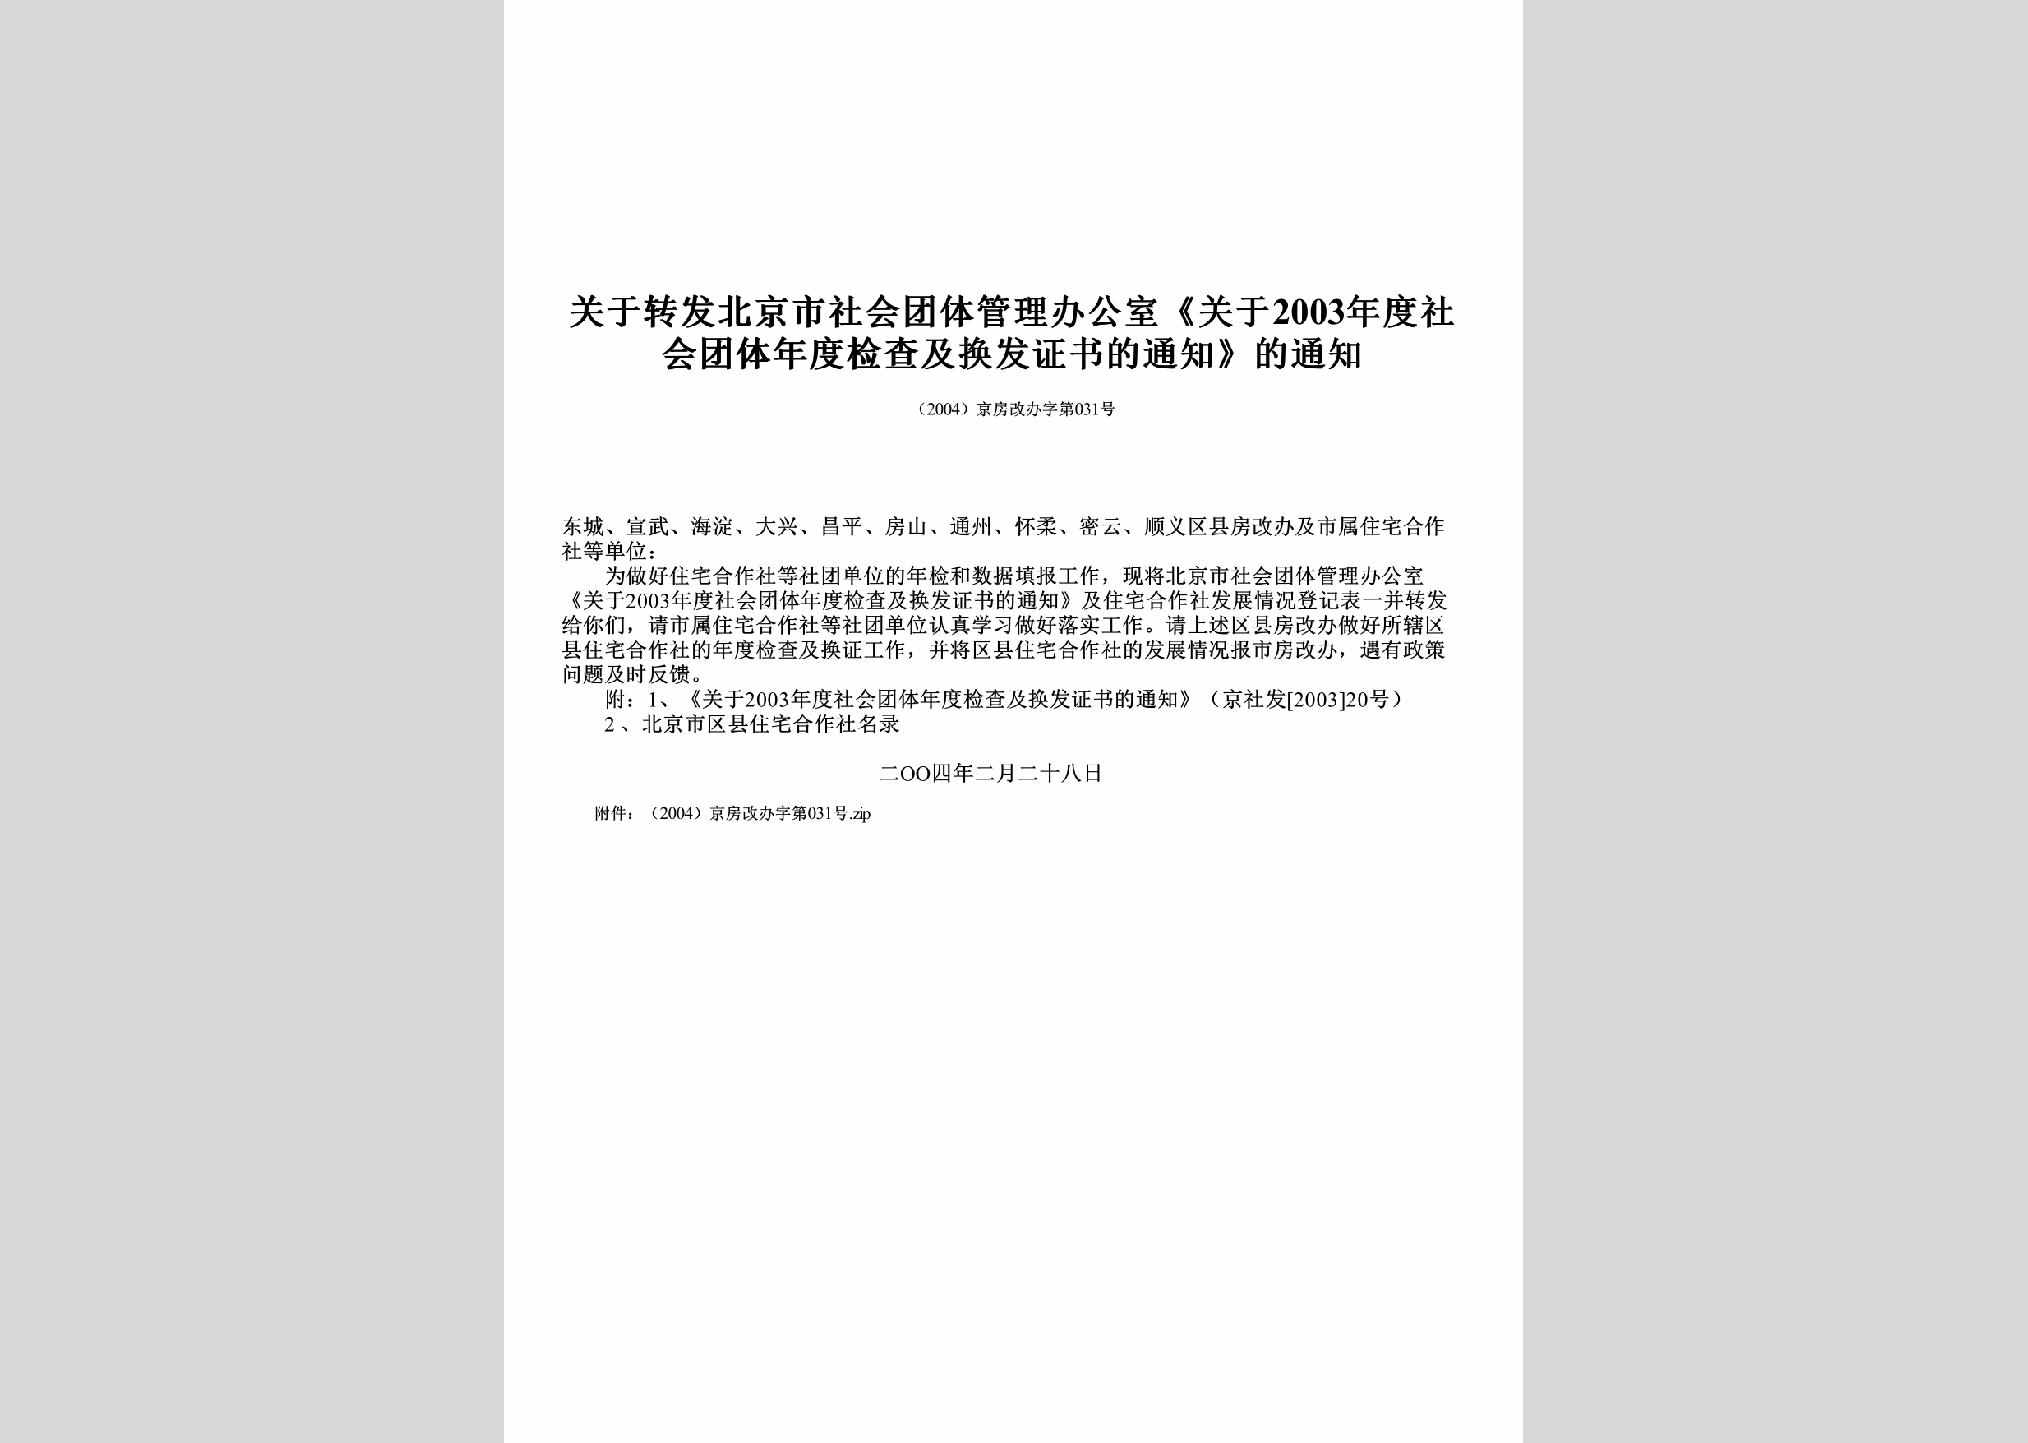 京房改办字[2004]第031号：关于转发北京市社会团体管理办公室《关于2003年度社会团体年度检查及换发证书的通知》的通知